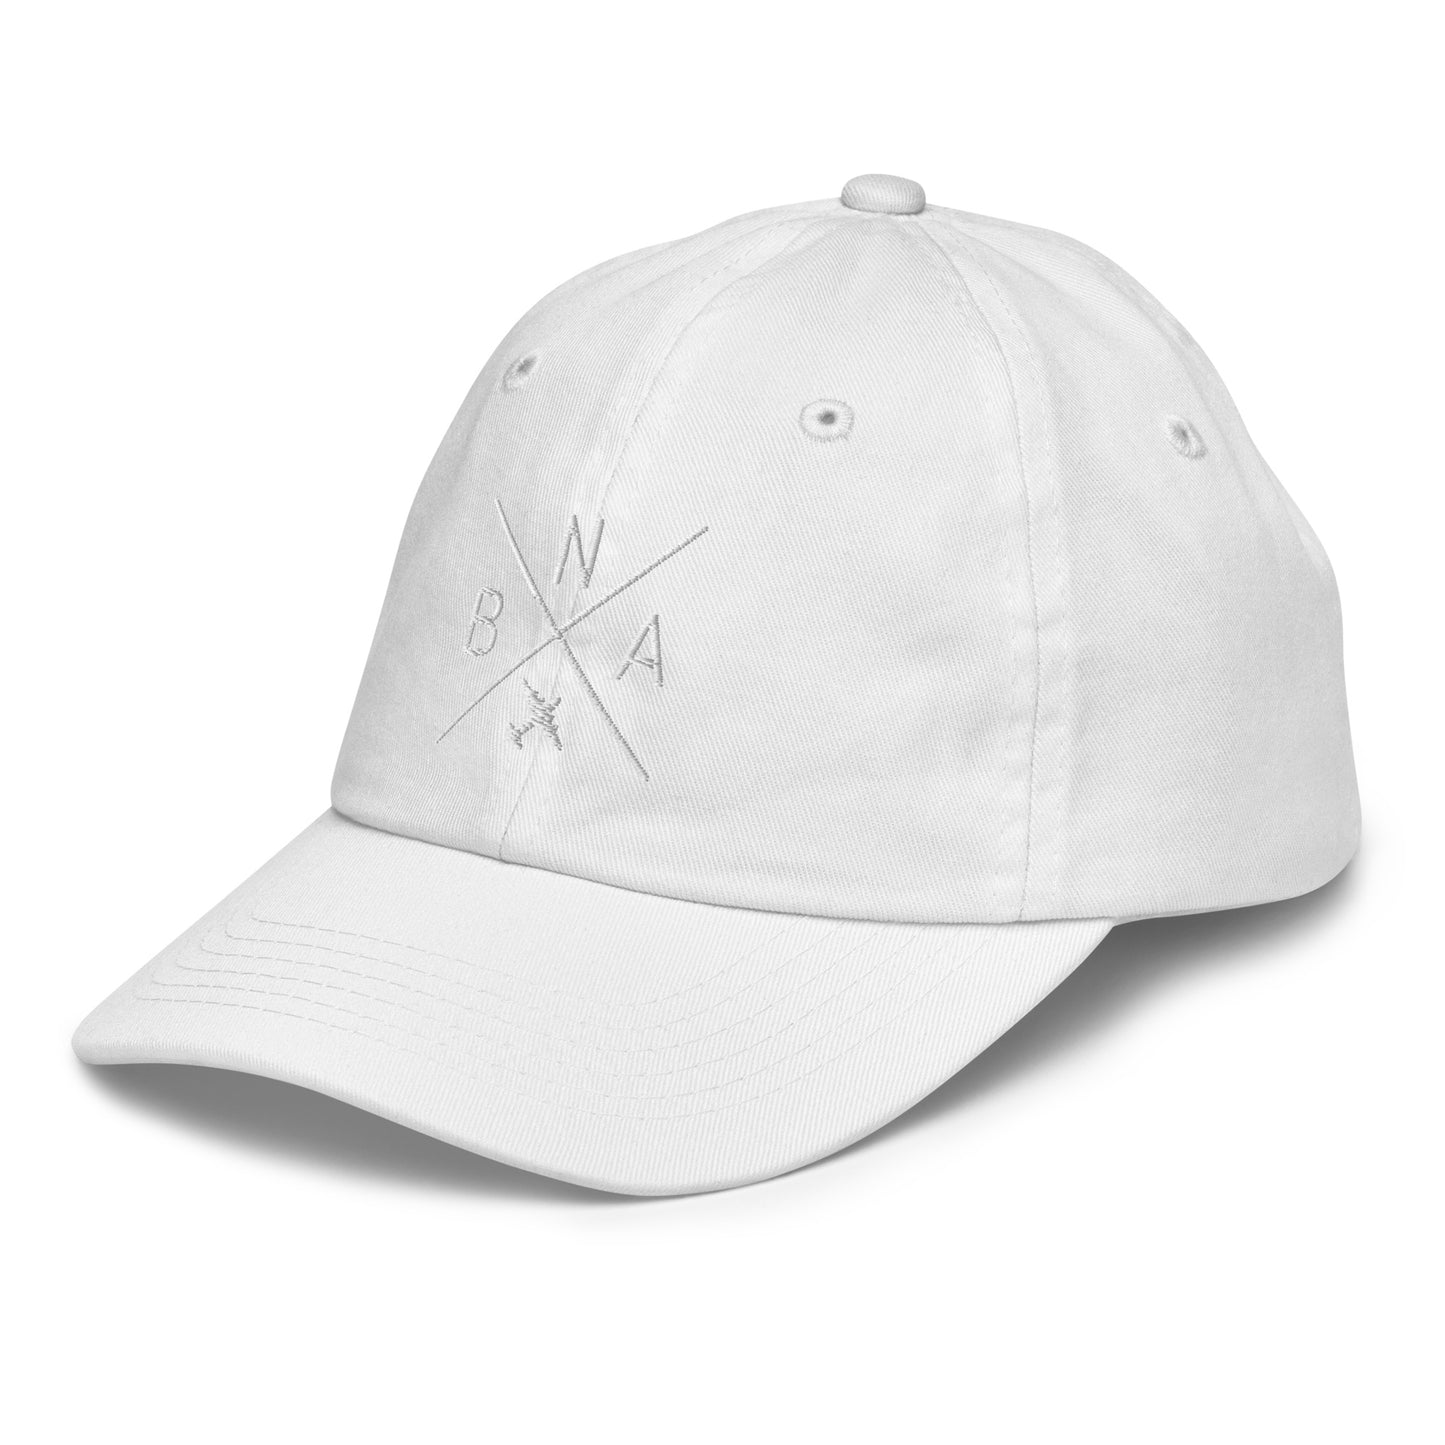 Crossed-X Kid's Baseball Cap - White • BNA Nashville • YHM Designs - Image 36